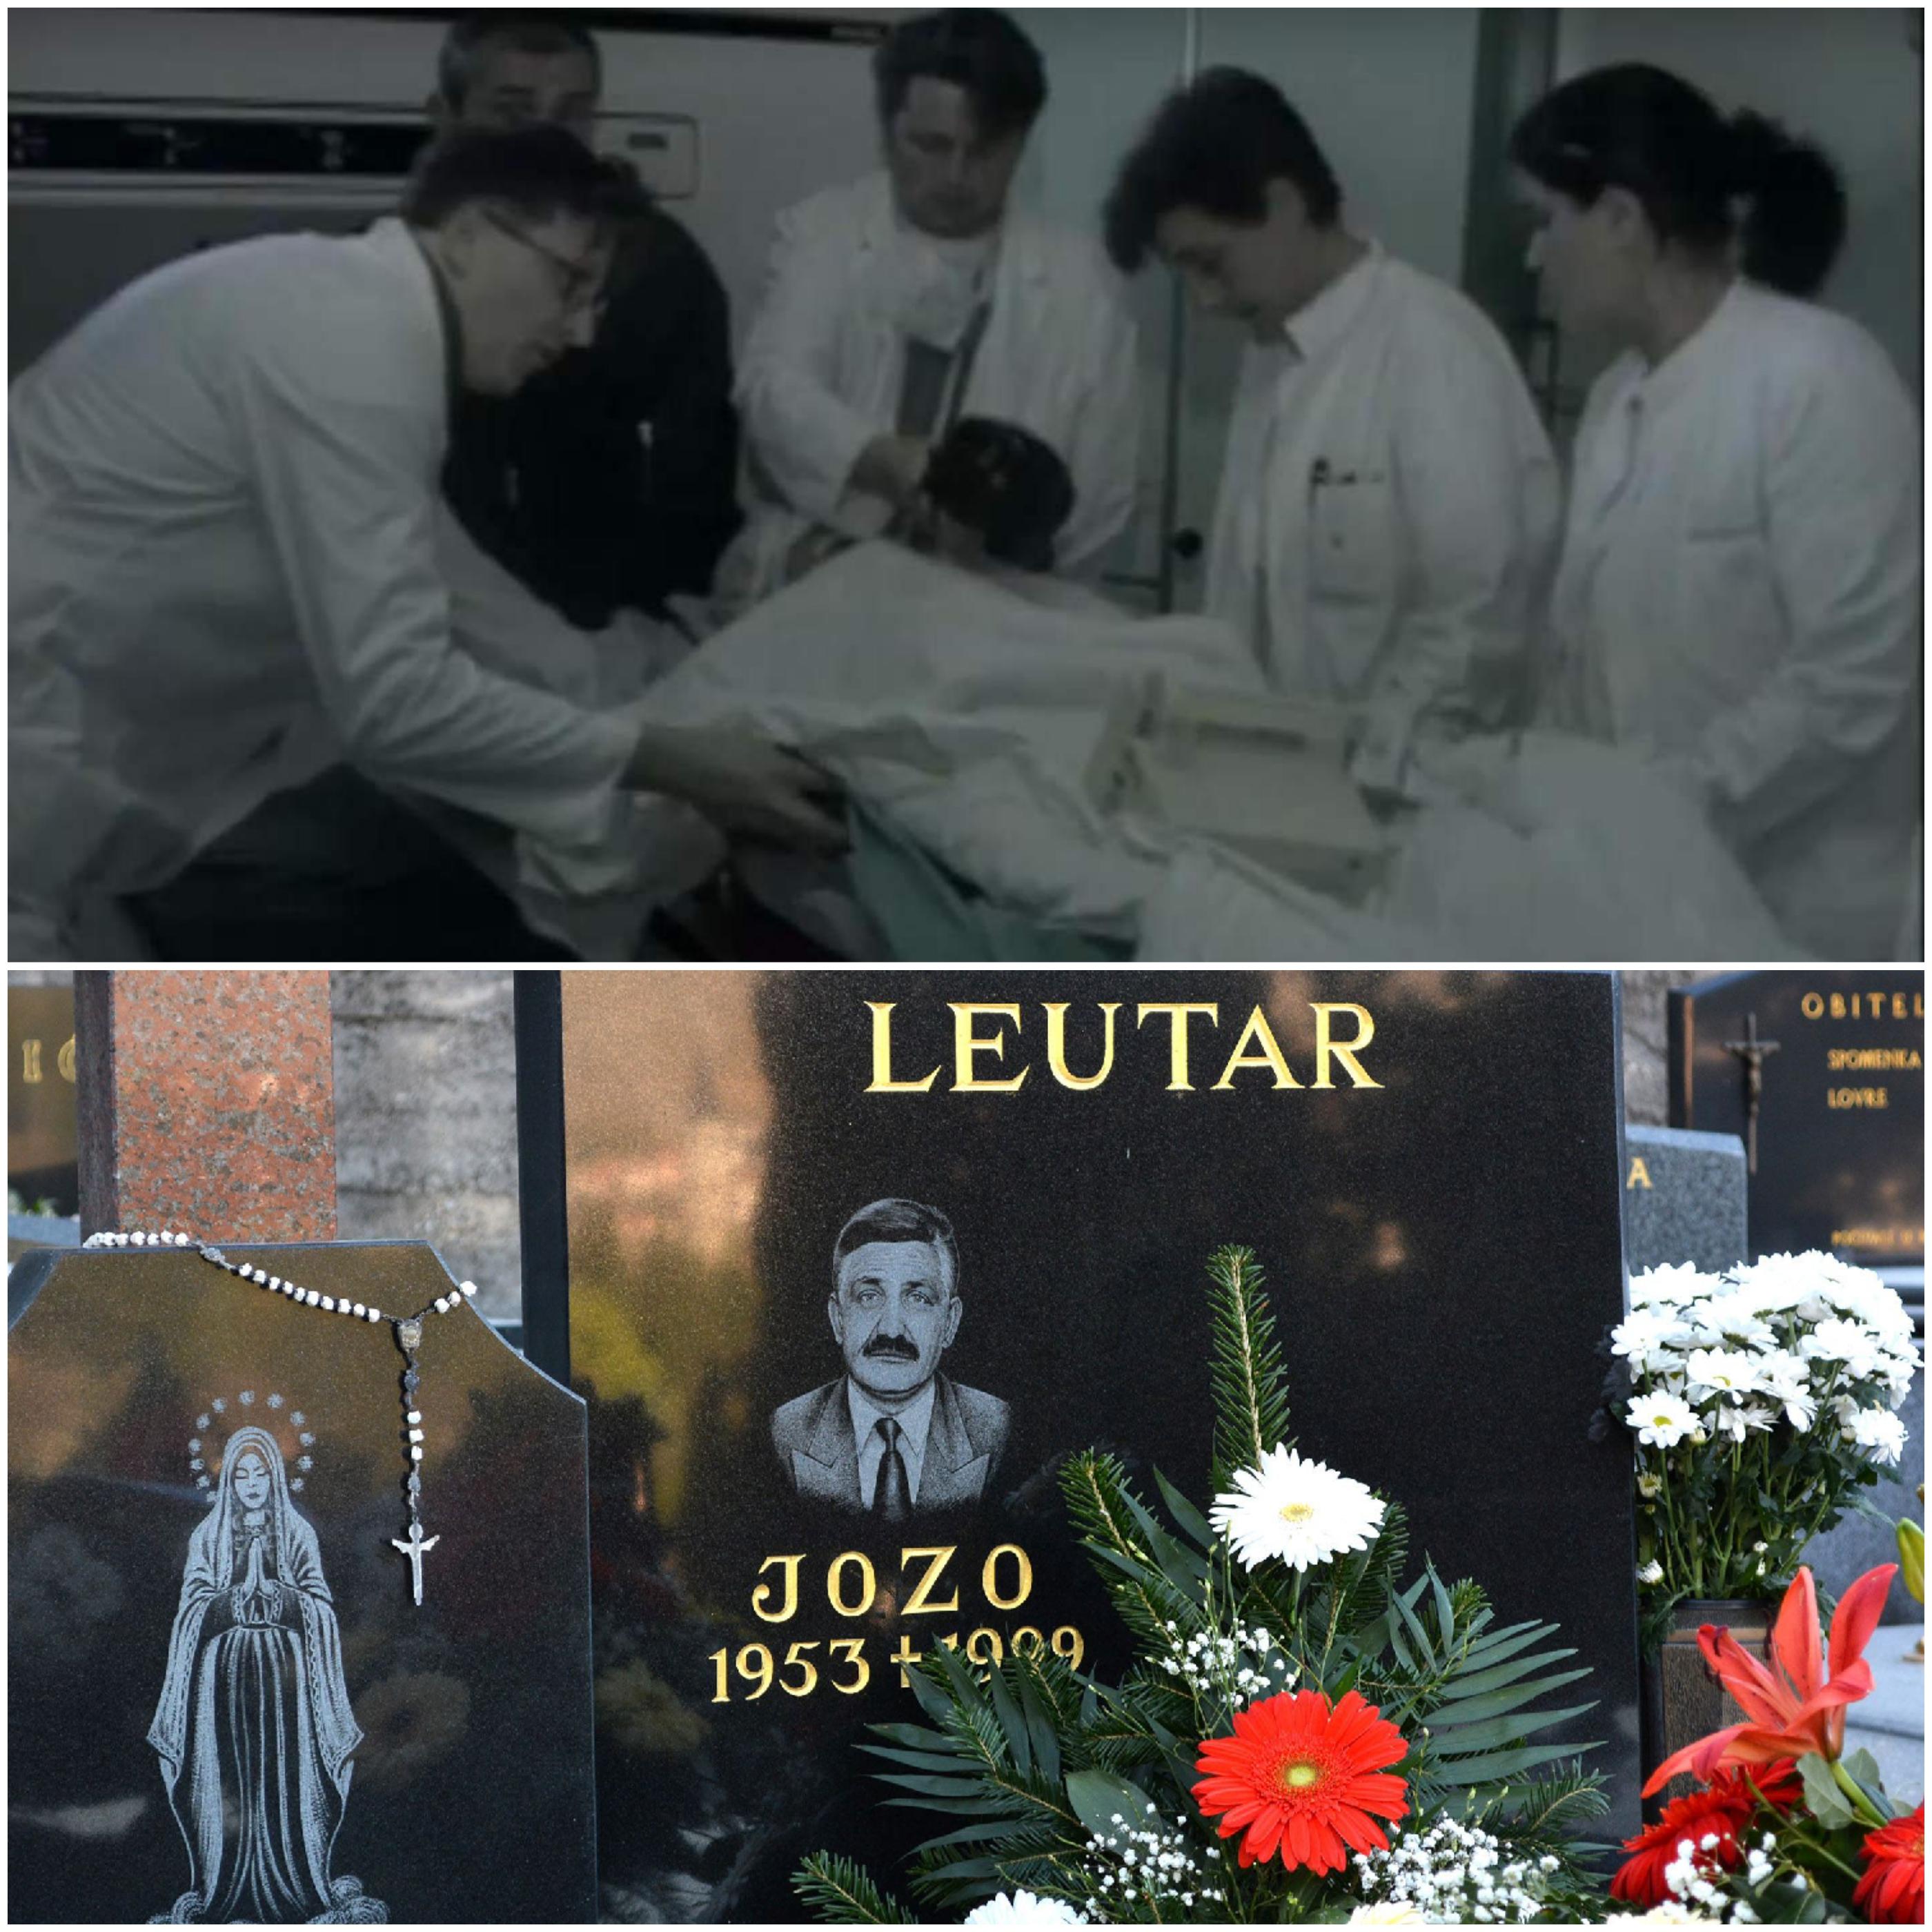 Jozo Leutar podlegao je u Kliničkom centru Sarajevo, sahranjen u Mostaru - Avaz